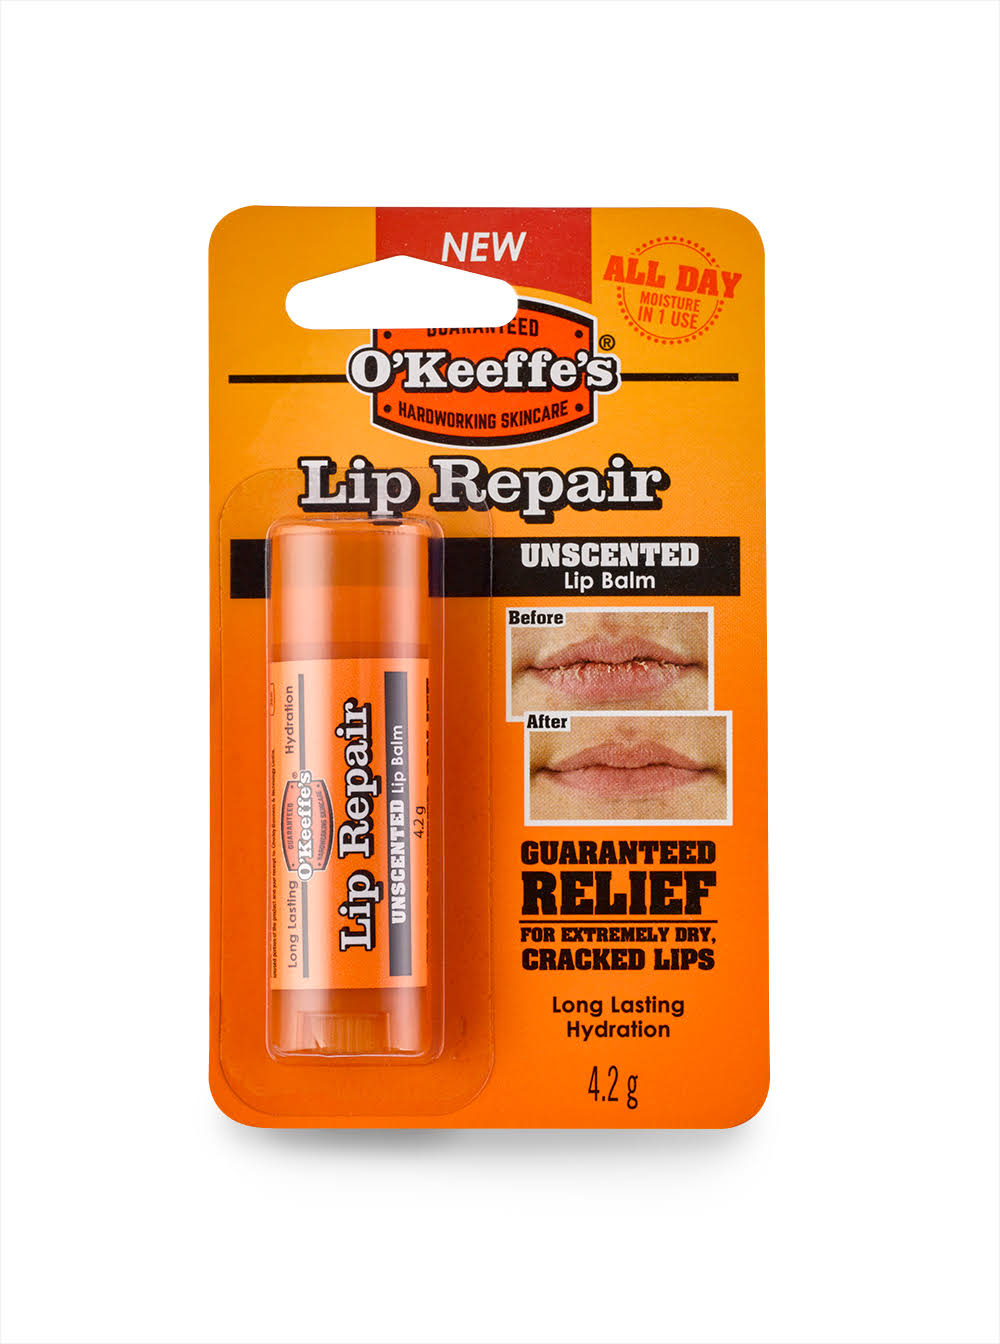 O'Keeffe's Lip Repair Lip Balm - Unscented, 4.2g